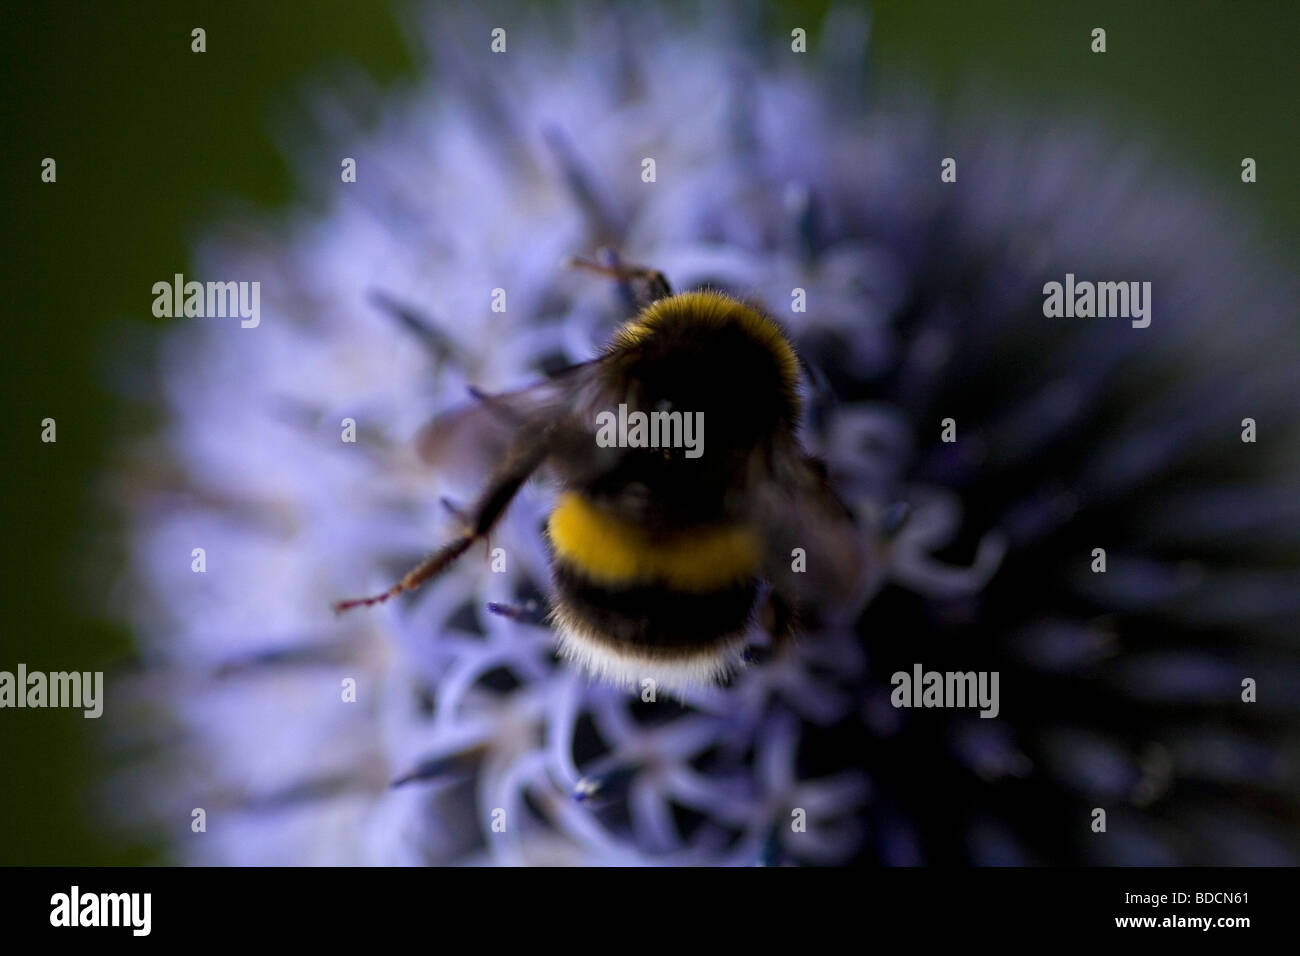 Ocupado como una abeja. Buff Tailed Bumble Bee recogiendo polen de un abierto, azul eléctrico, Eryngium cabeza floral. Foto de stock